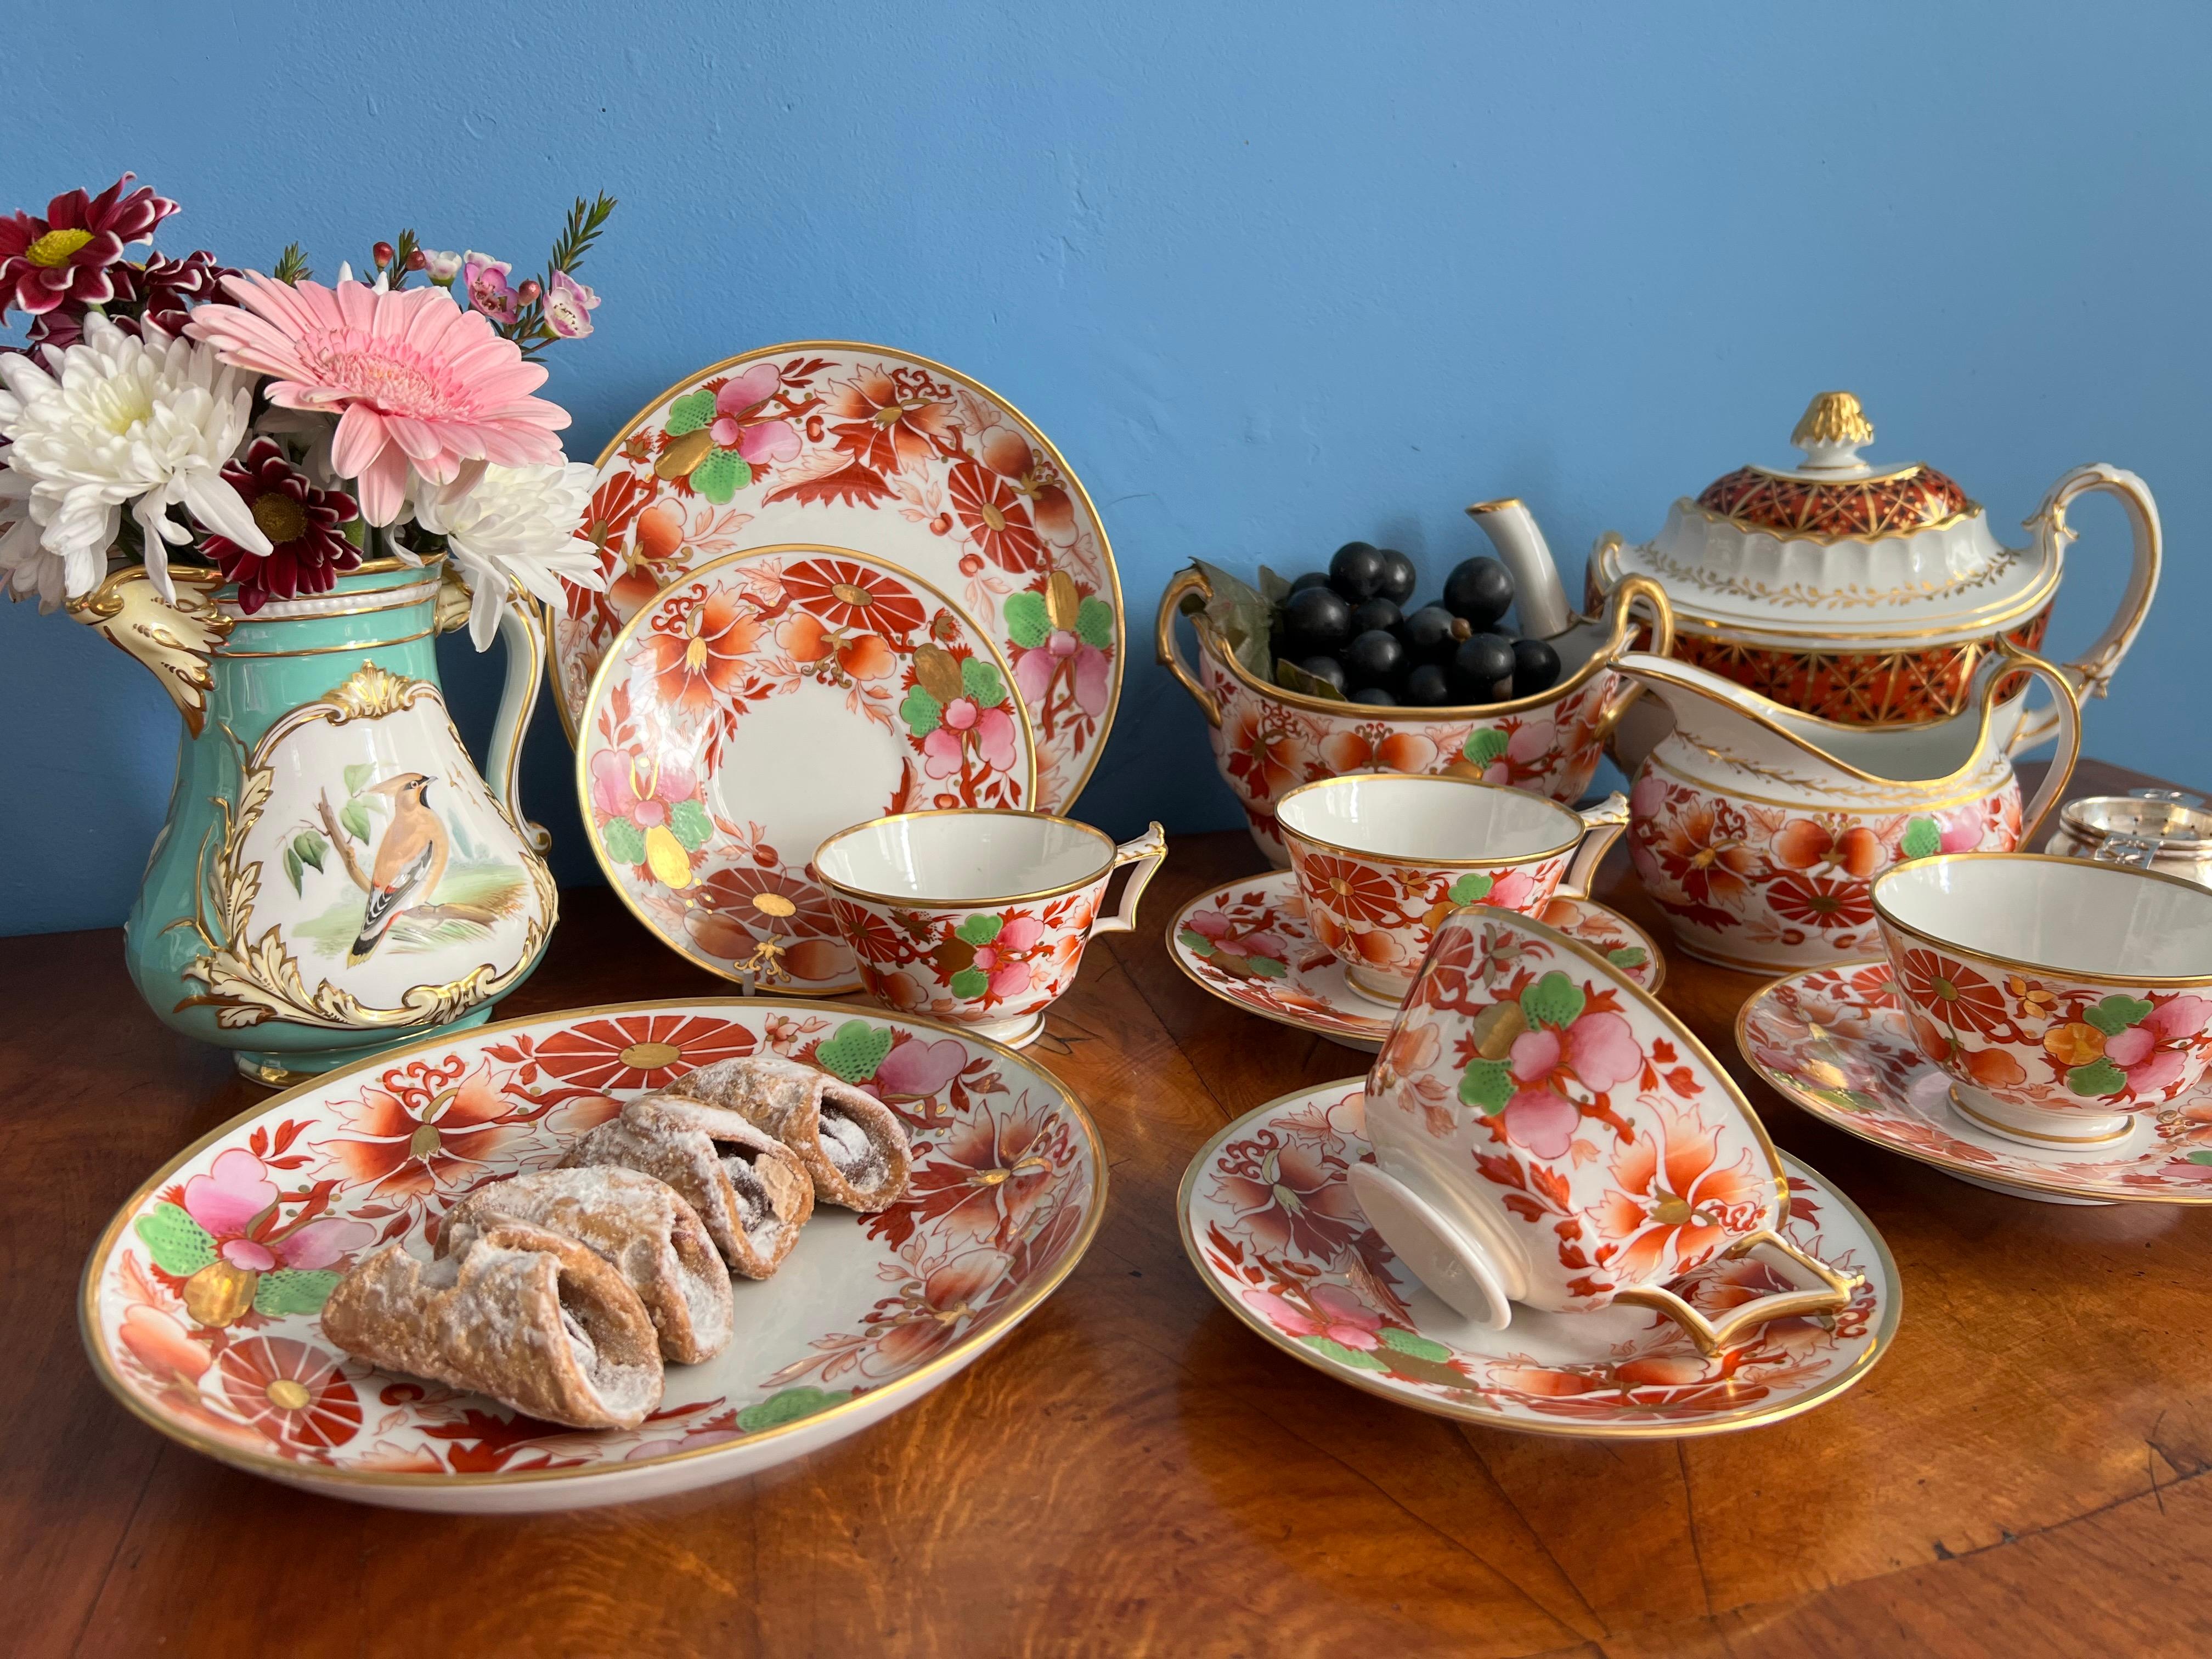 Il s'agit d'une tasse à thé et d'une soucoupe colorées fabriquées par Flight Barr & Barr vers 1815. L'ensemble est décoré d'un brillant motif Imari dans le goût de la Régence.

Cette tasse à thé aurait fait partie d'un grand service à thé. J'ai